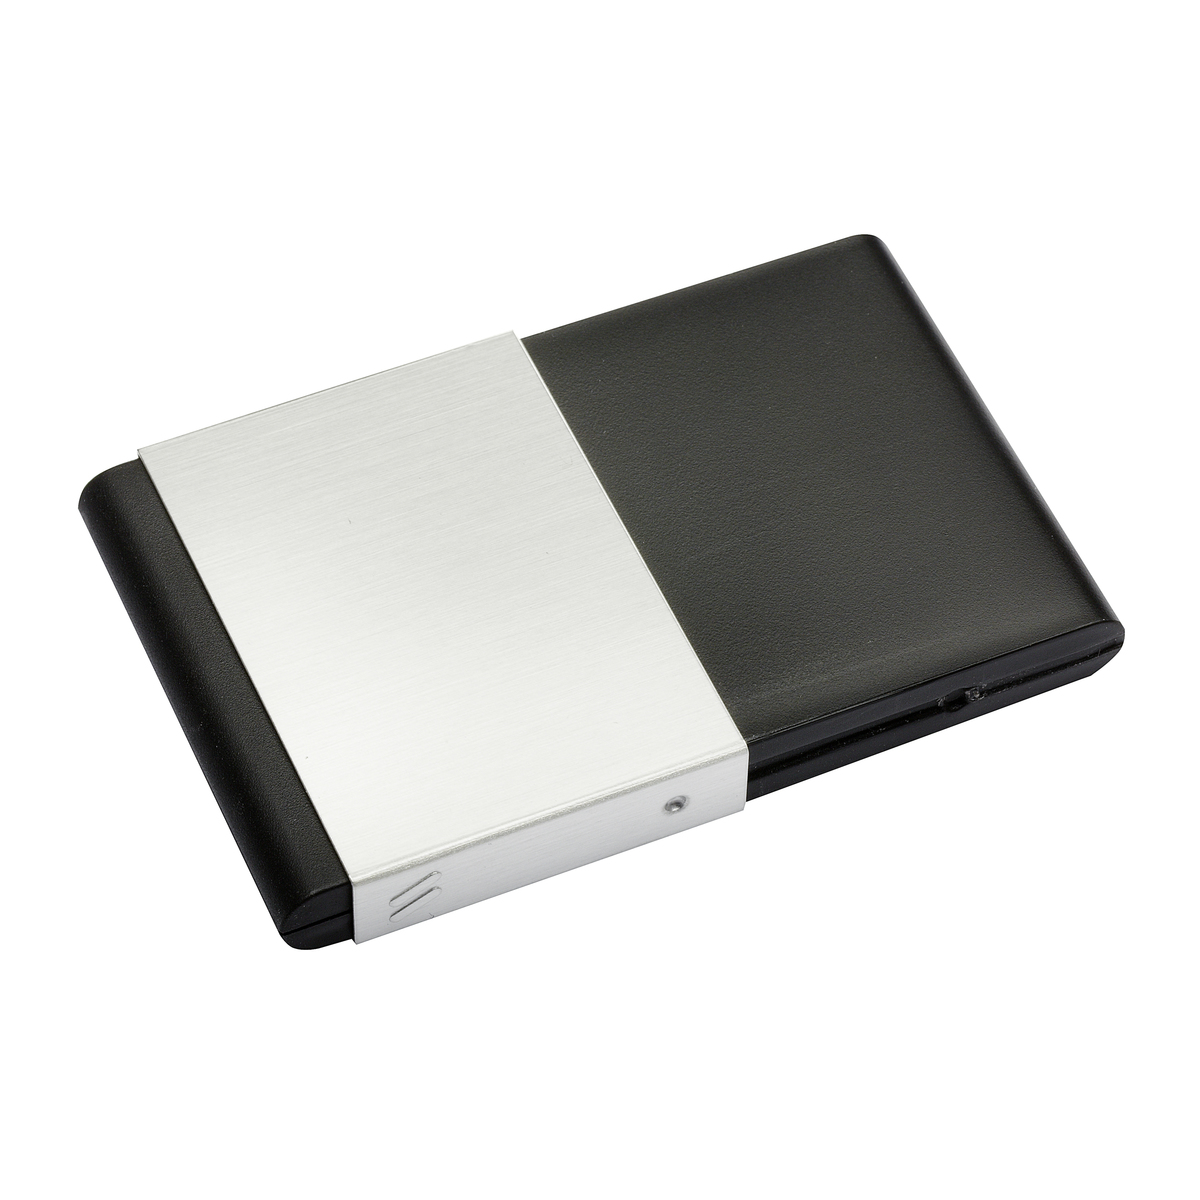 LM Visitenkartenbox REFLECTS-SARZEDO SILVER BLACK schwarz, silber, silber/schwarz